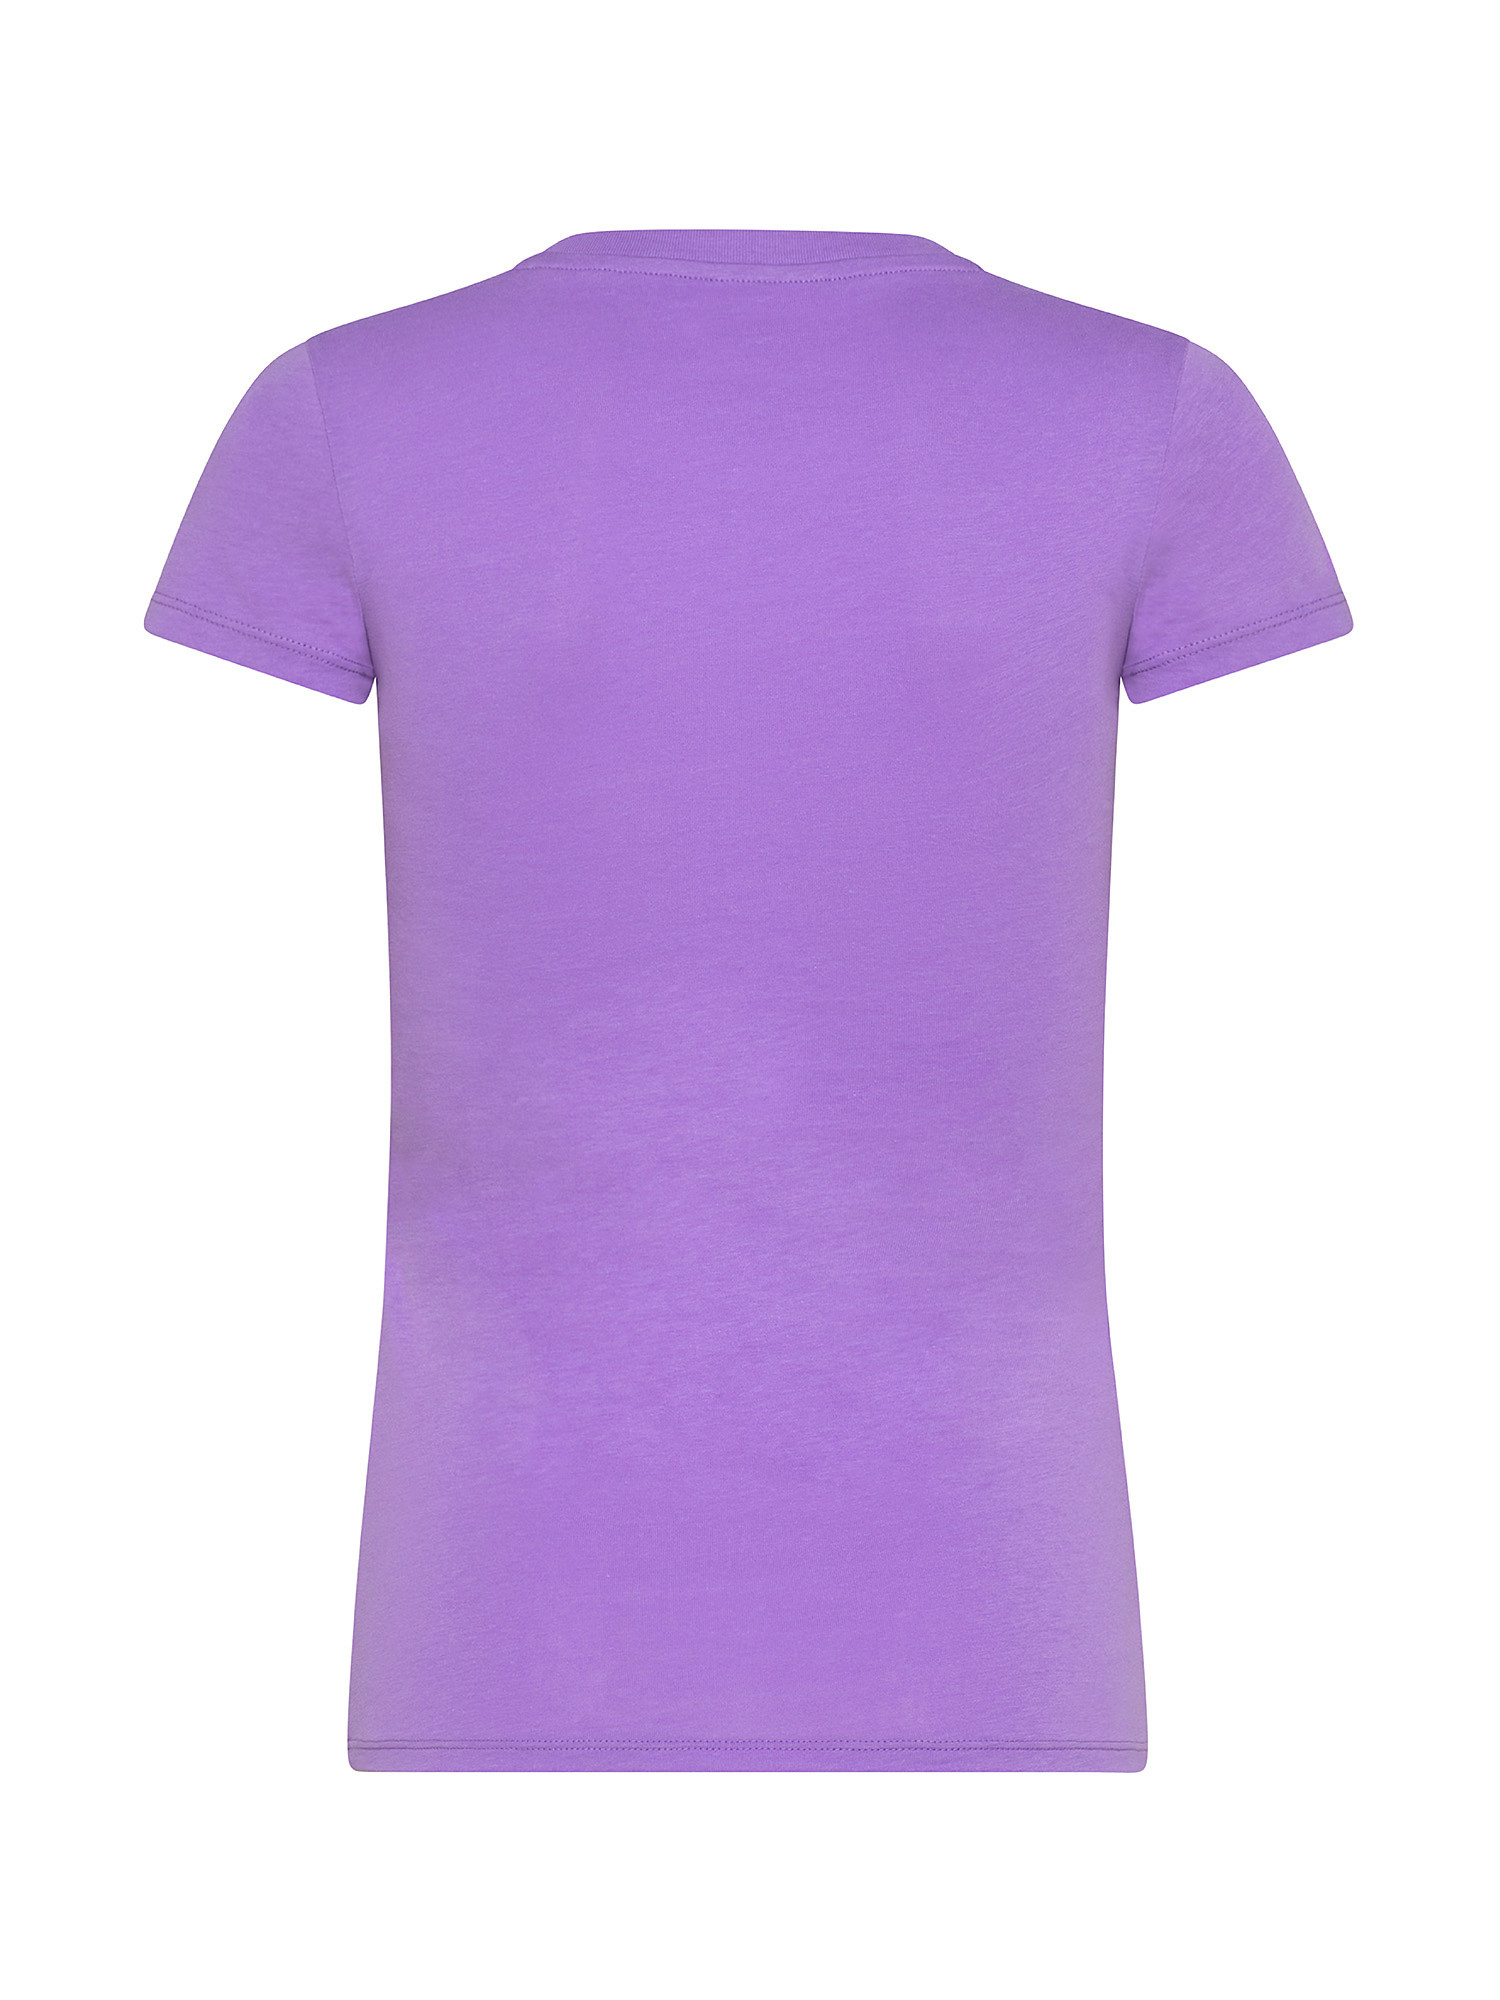 T-shirt con paillettes, Viola lilla, large image number 1